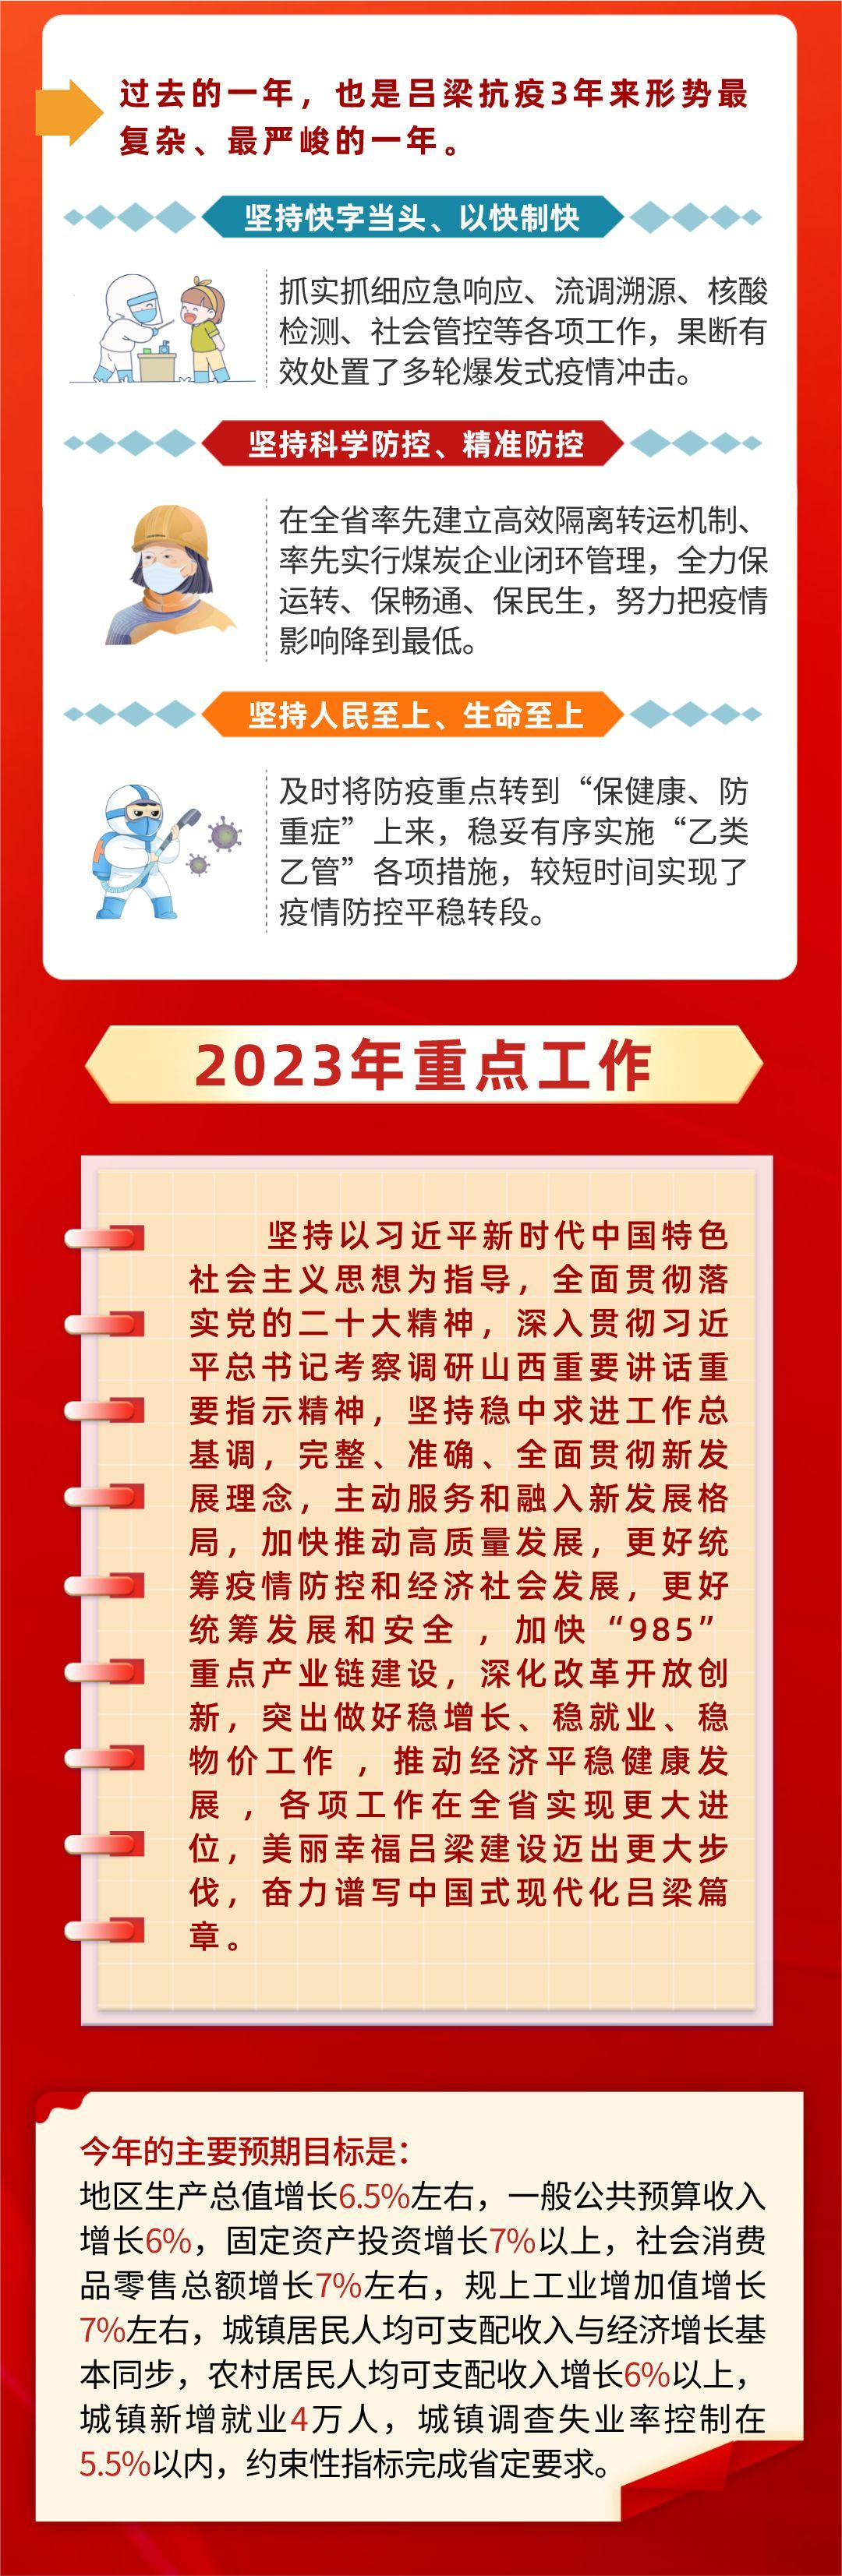 一图读懂2023吕梁市政府工作报告